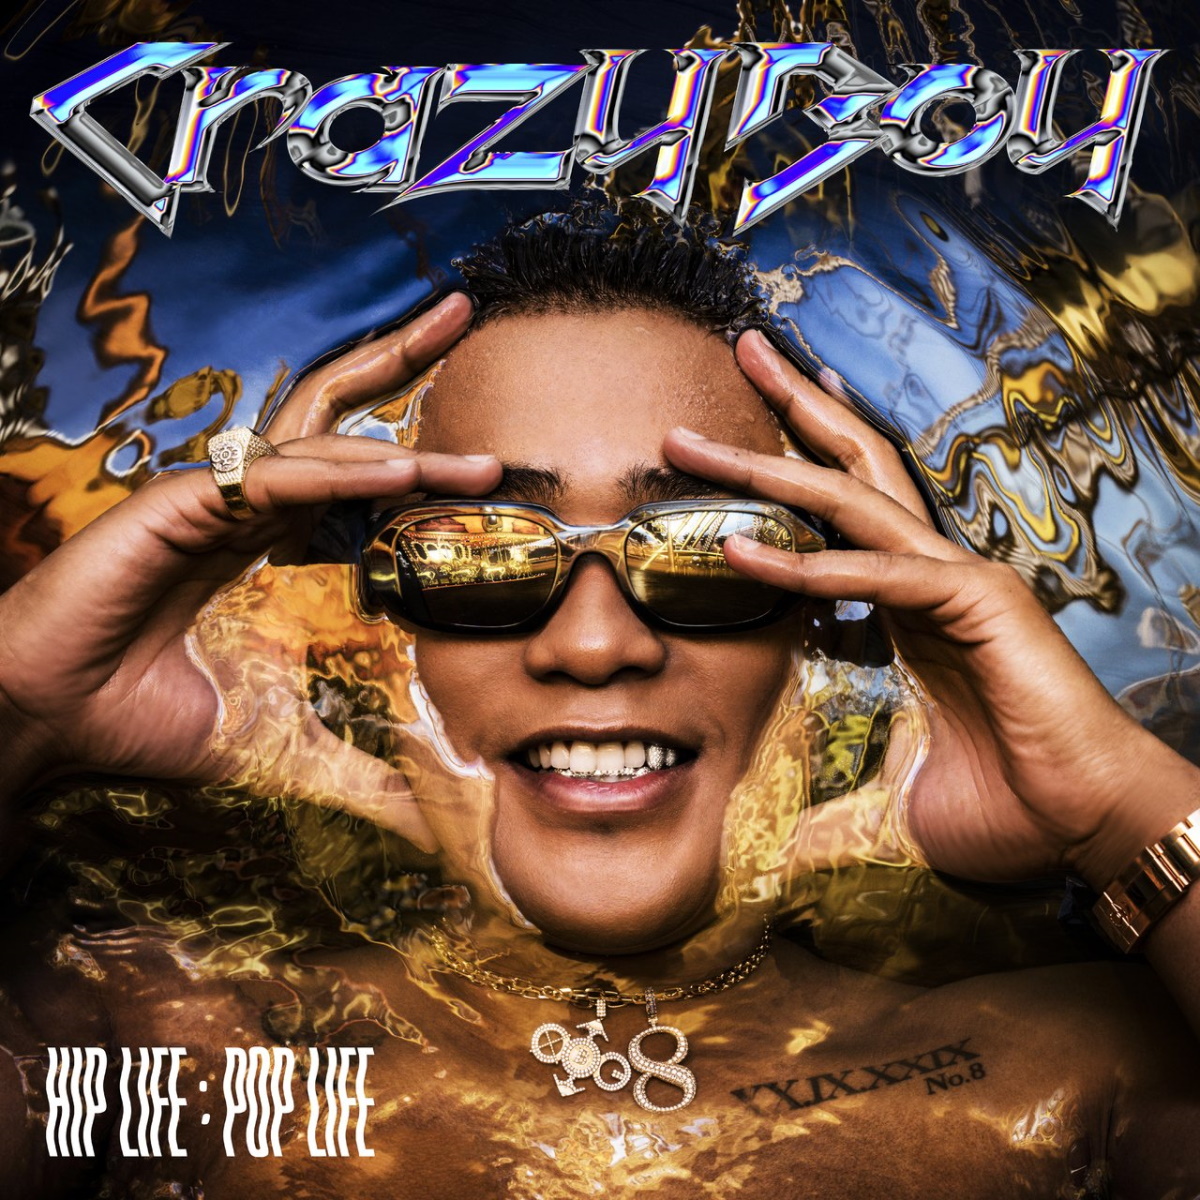 『CrazyBoy - DoCoDeMo DooR Remix (feat. JP THE WAVY) 歌詞』収録の『HIP LIFE：POP LIFE』ジャケット